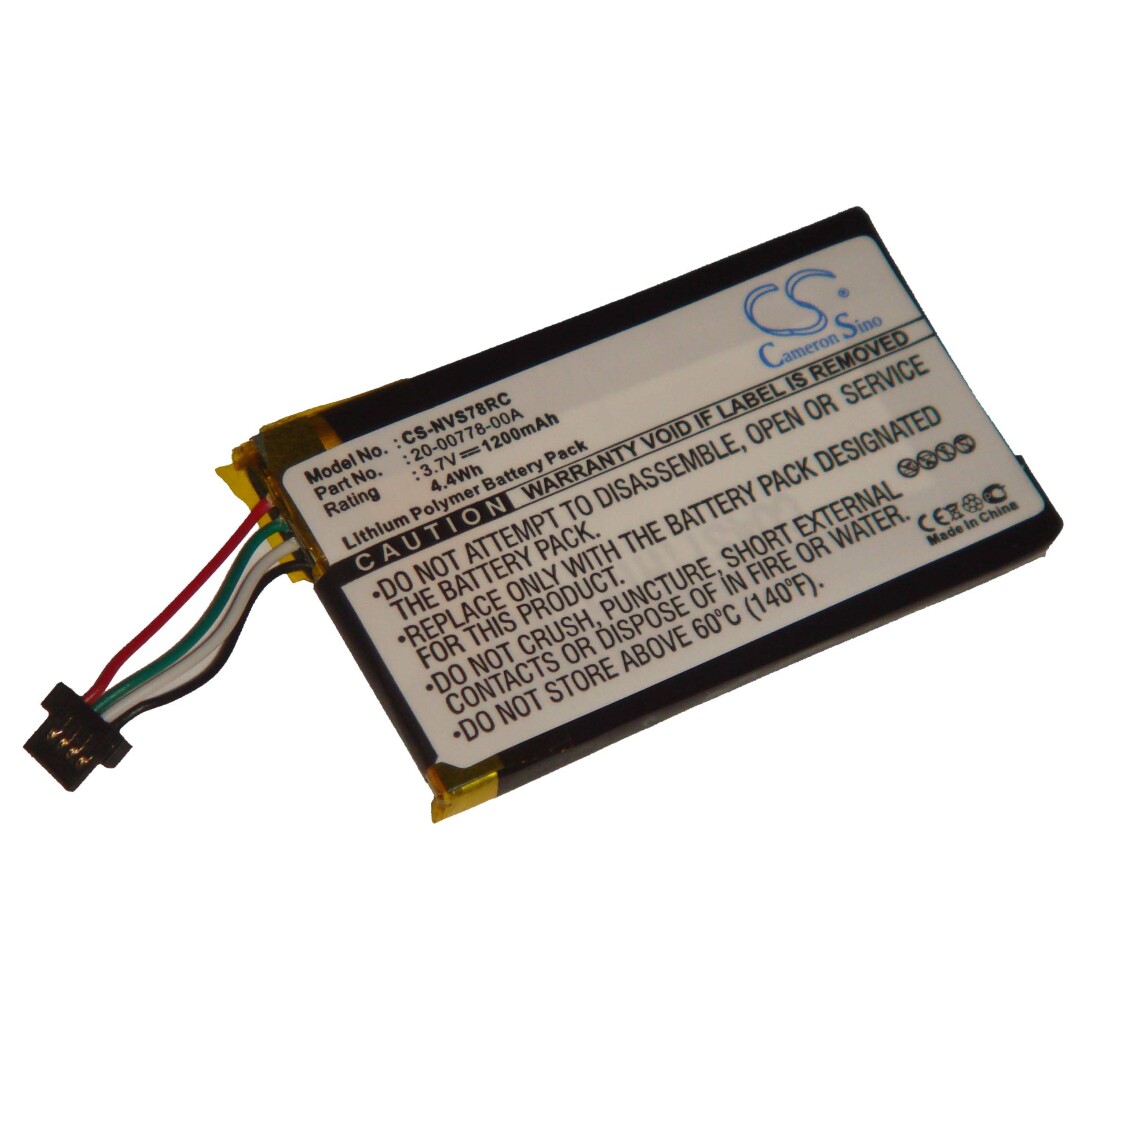 Vhbw - vhbw batterie remplace Nevo 20-00778-00A pour télécommande remote control (1200mAh, 3,7V, Li-Polymère) - Autre appareil de mesure